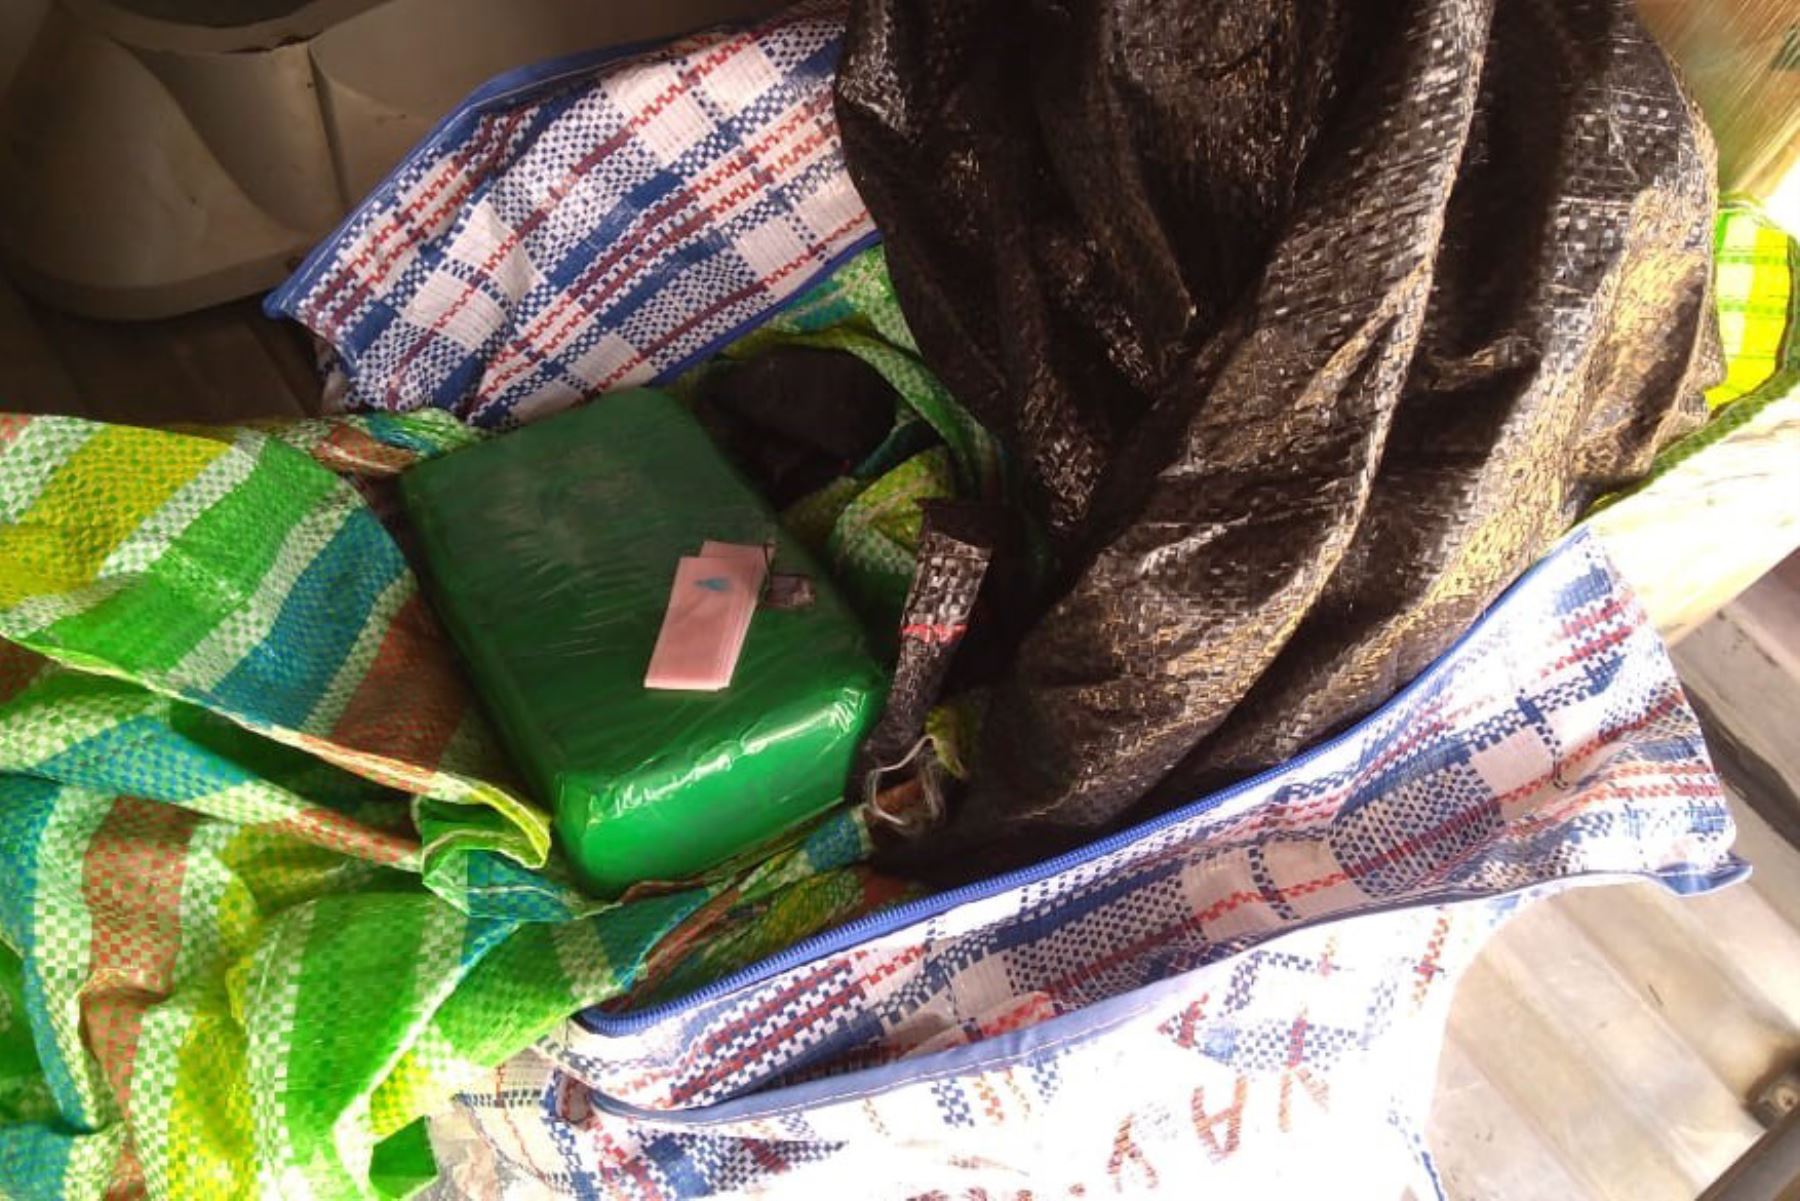 En encomienda de bus que se dirigía a Tacna se encontraron nueve paquetes pequeños con 8.8 kilos de pasta básica de cocaína.